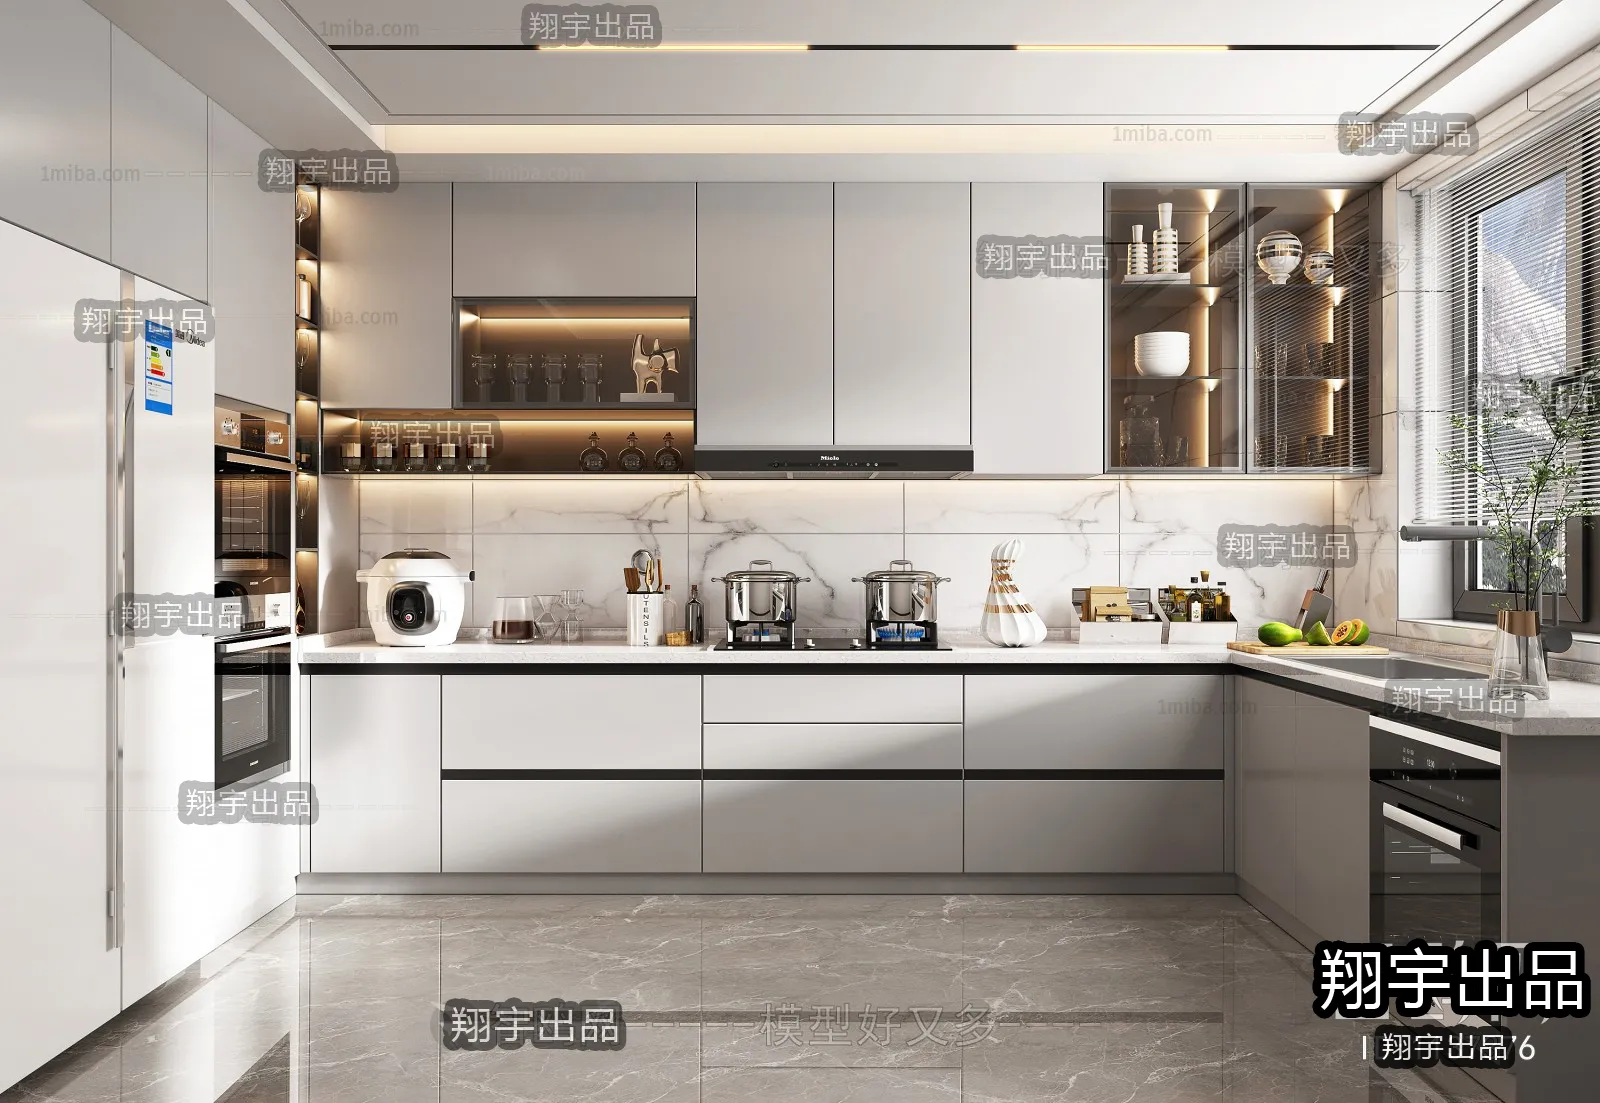 Kitchen – Modern Interior Design – 3D Models – 023